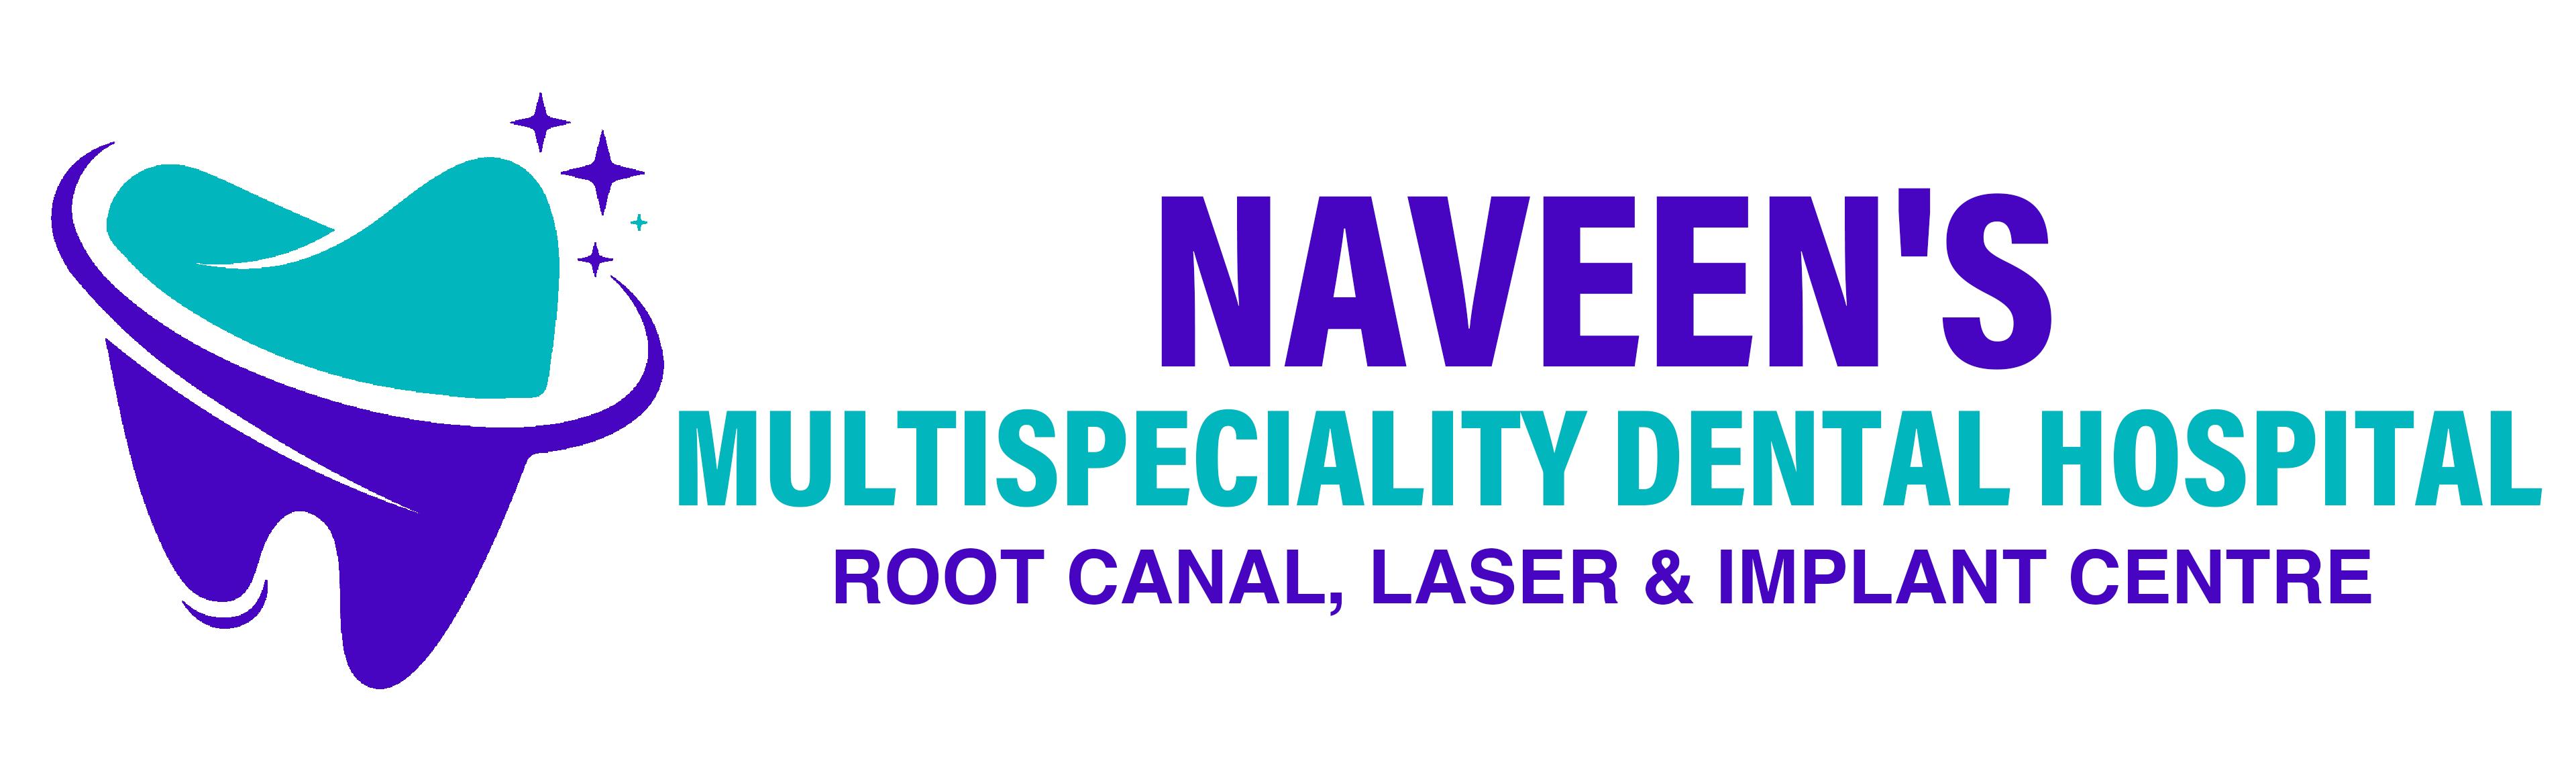 Naveen's Multispeciality Dental Hospital